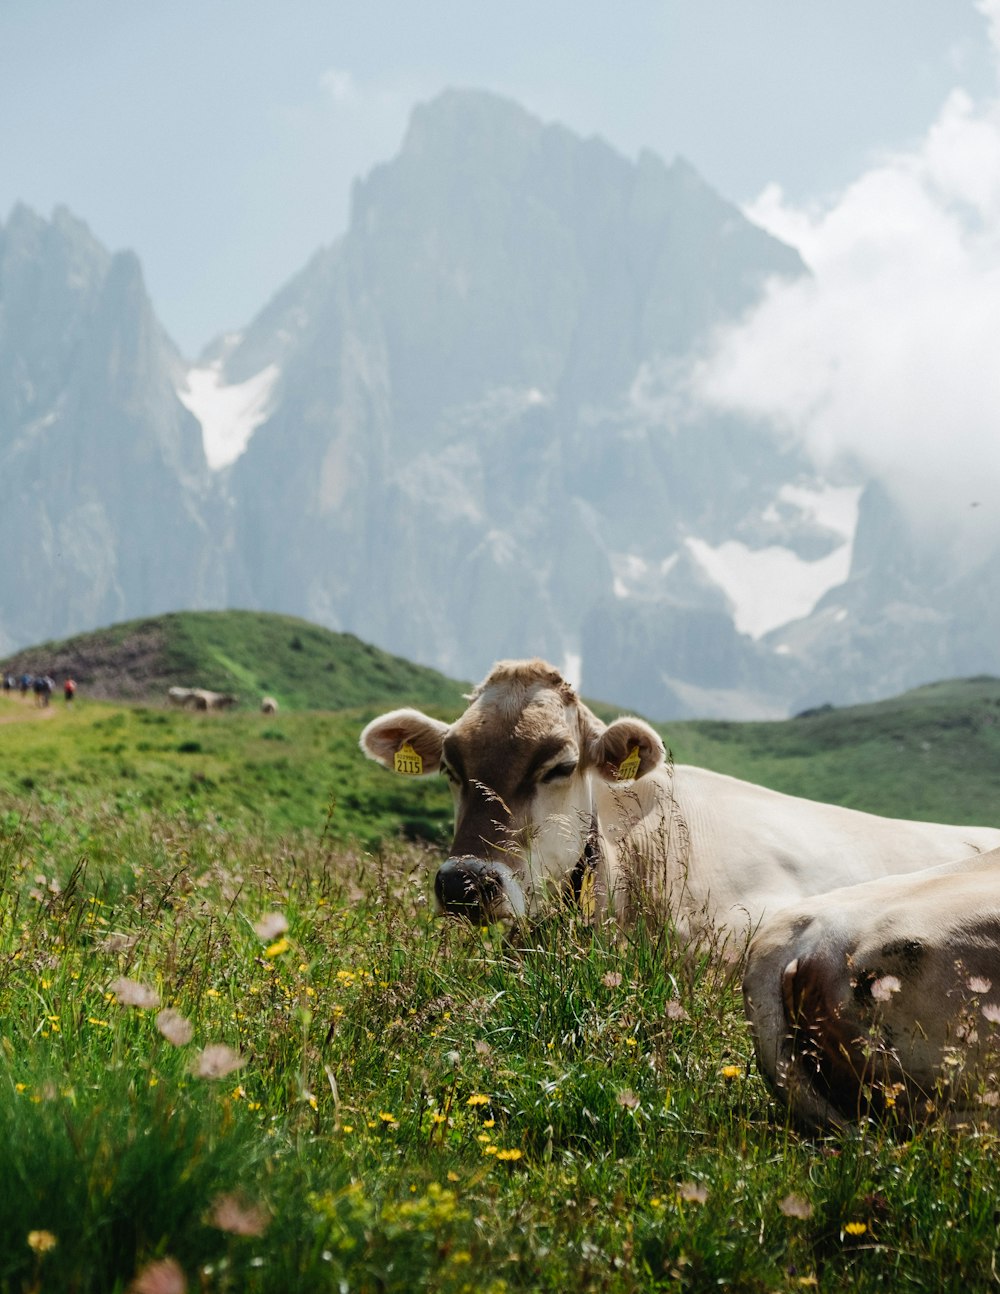 Vaca marrón en campo de hierba verde durante el día